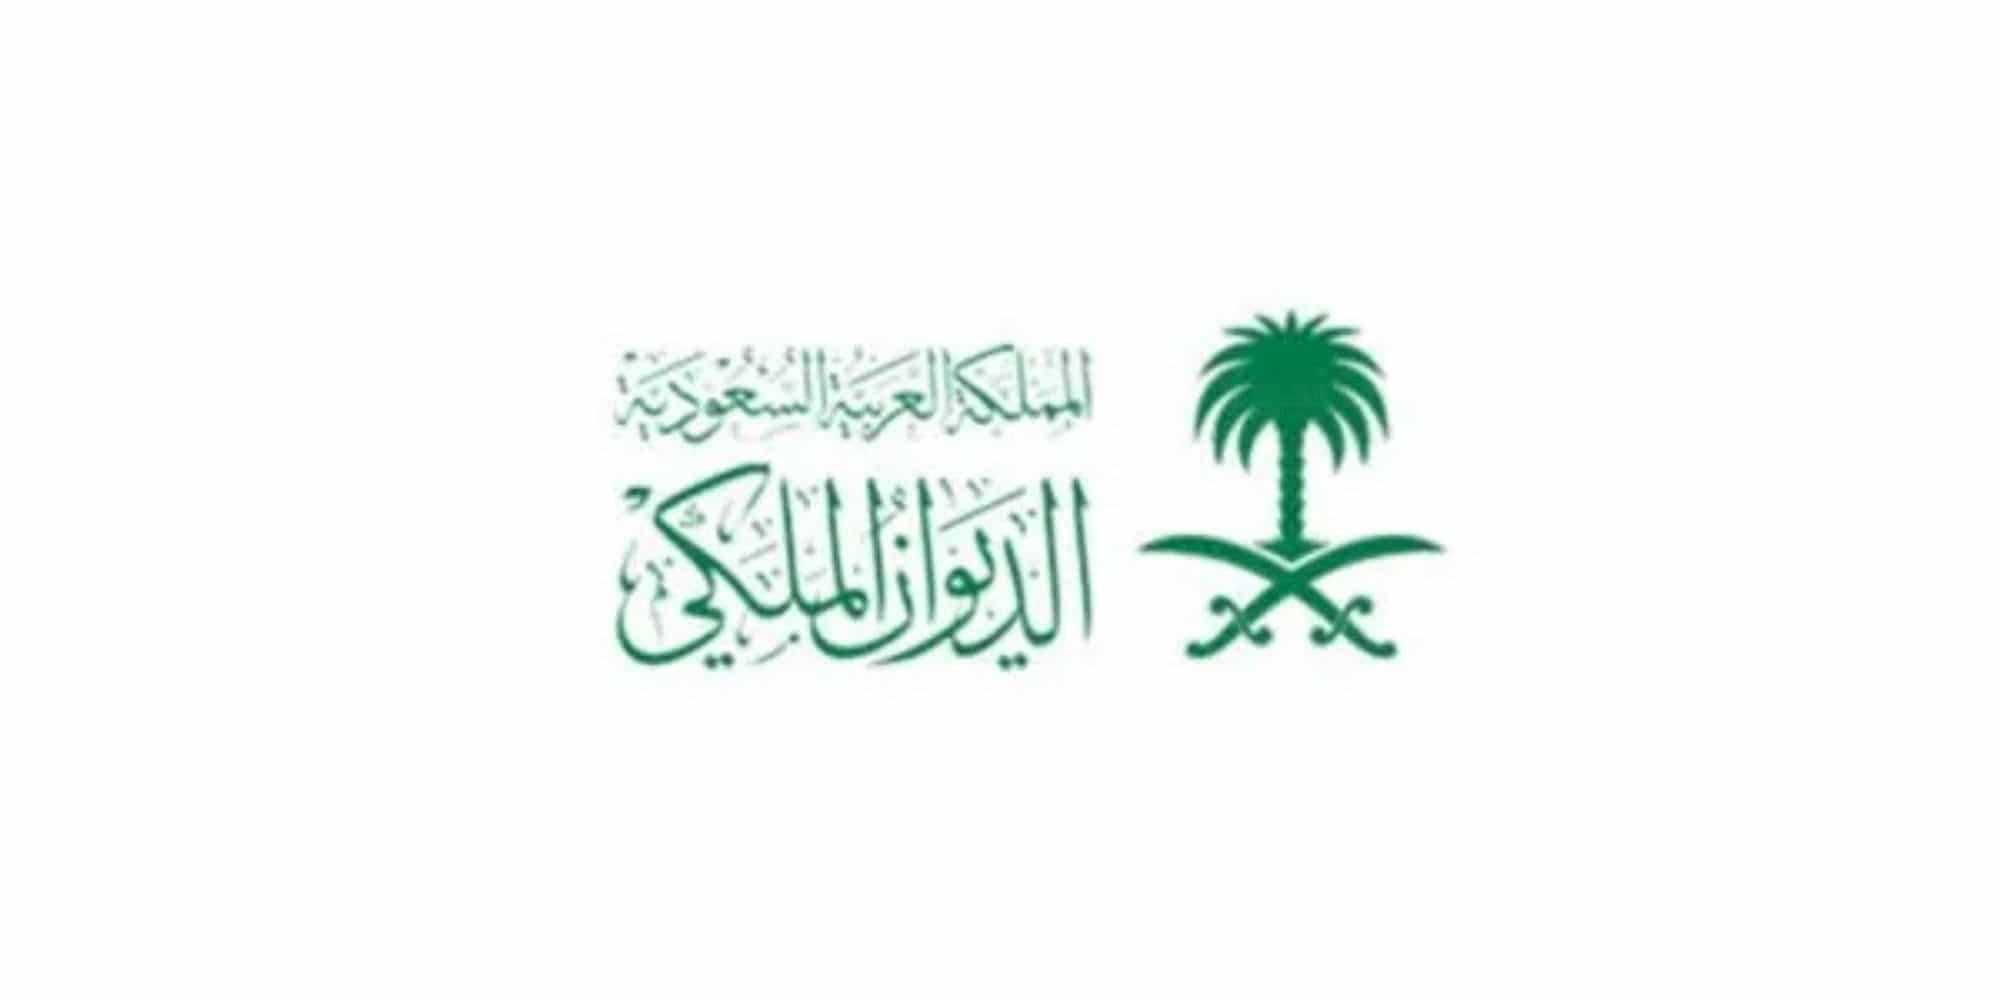 الملكي-السعودي-للمساعدات-1444-خطوات-ارسال-برقية-طرق-التواصل.jpg